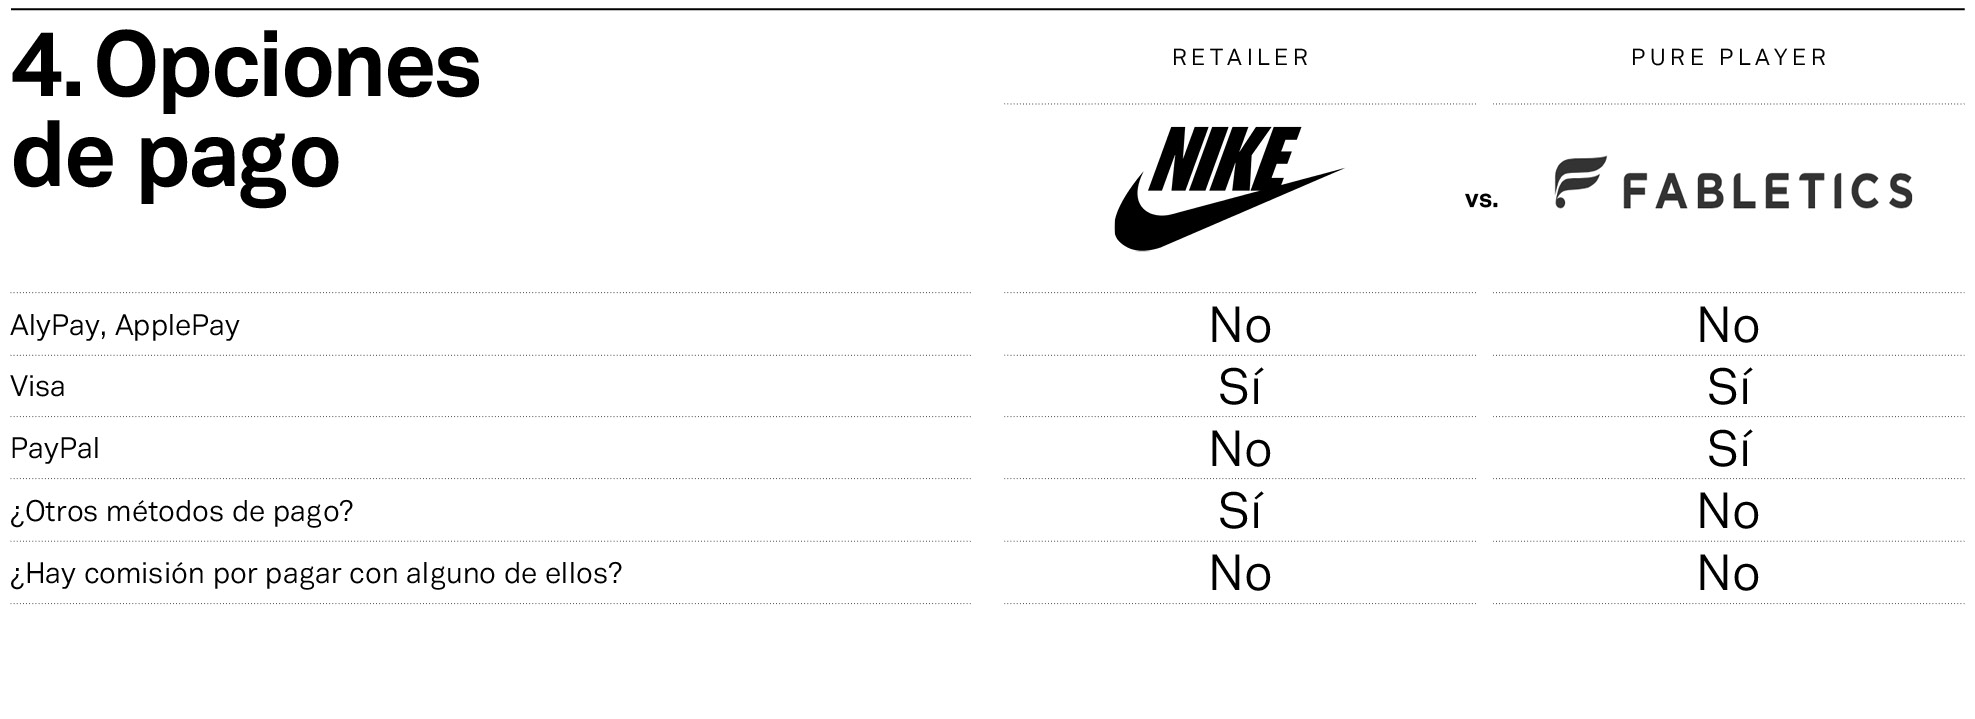 Nike y Fabletics, frente a frente en las opciones de envío